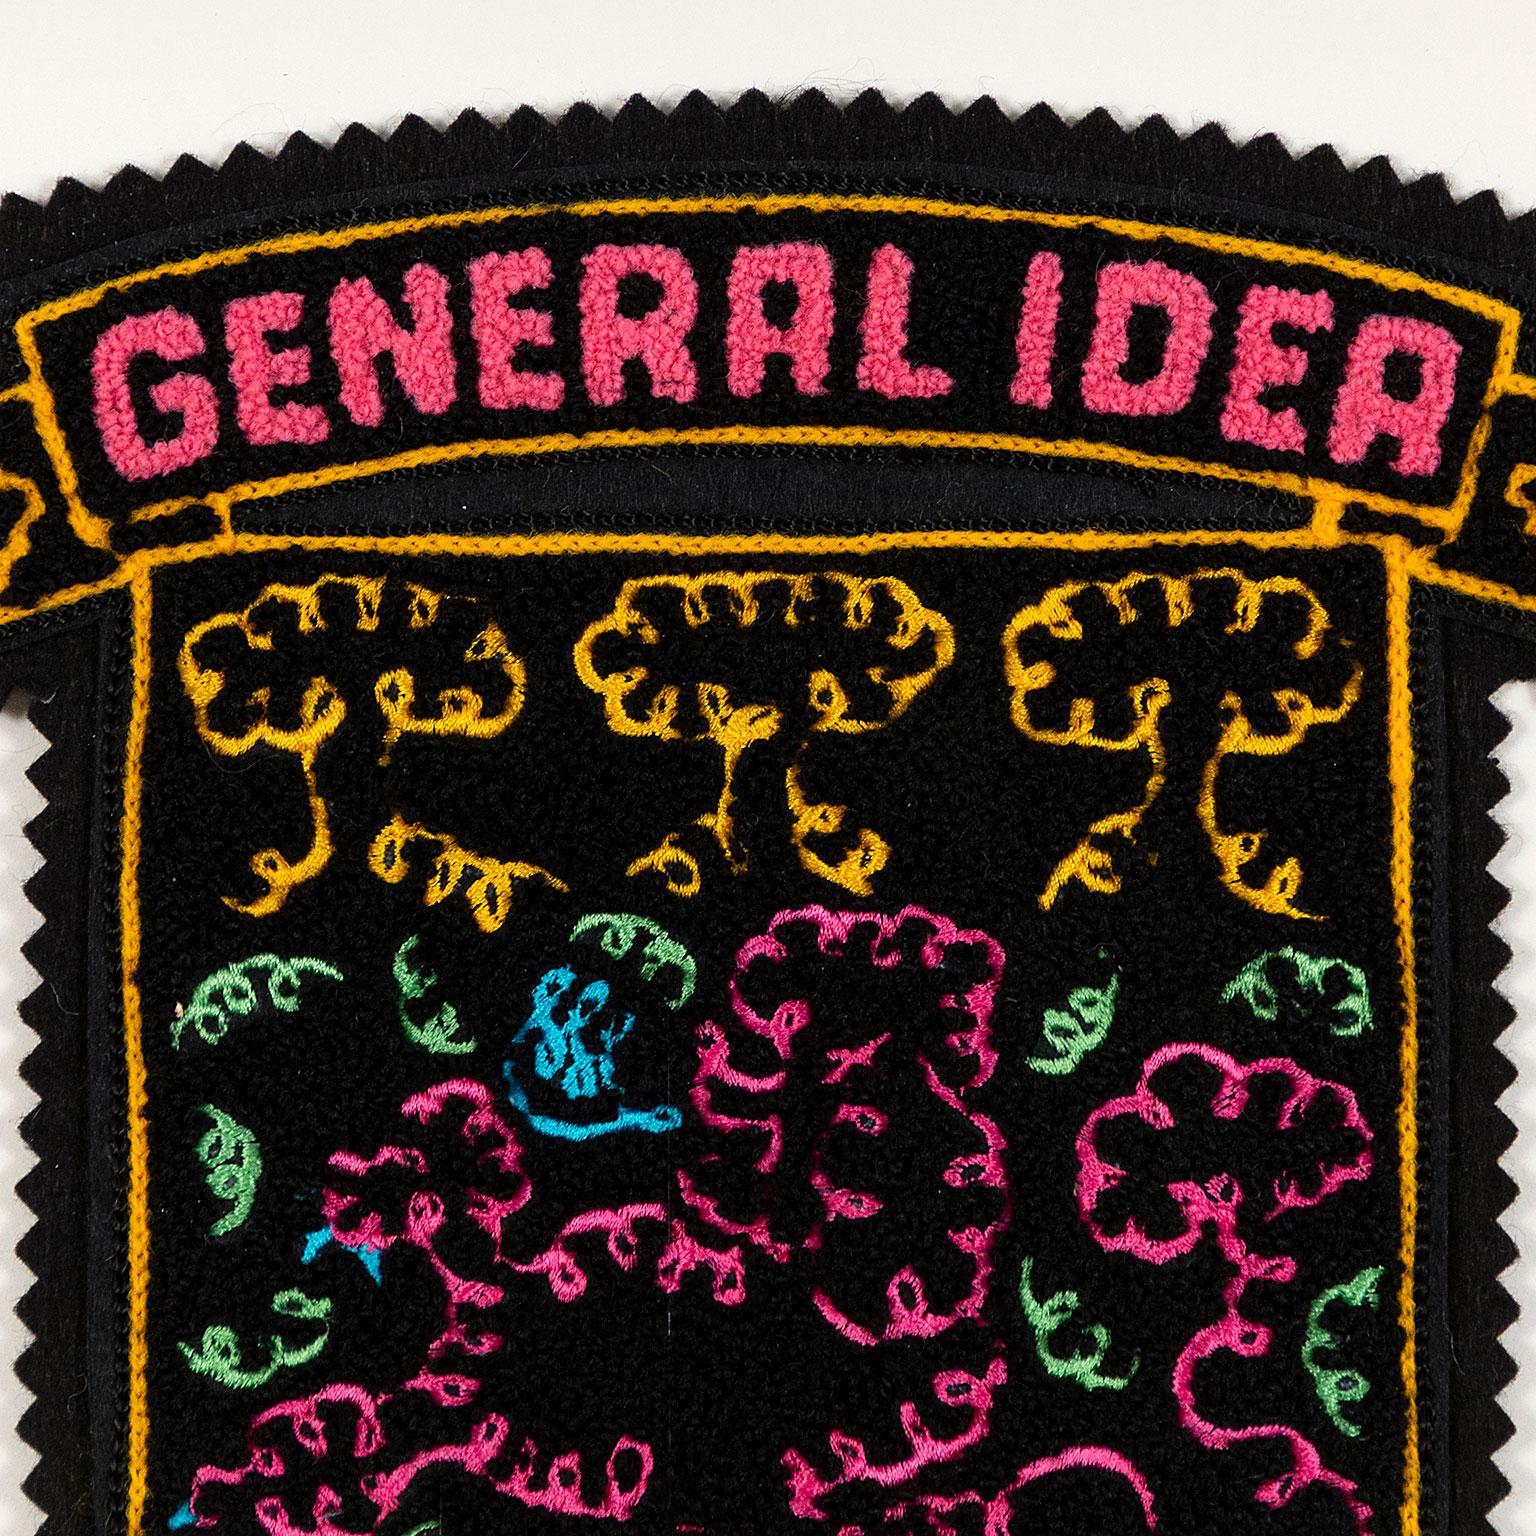 En 1967, General Idea a été fondé à Toronto par IDEA (né en 1946), Felix Partz (1945-1994) et Jorge Zontal (1944-1994). Pendant 25 ans, ils ont apporté une contribution significative à l'art postmoderne et conceptuel au Canada et au-delà.

General